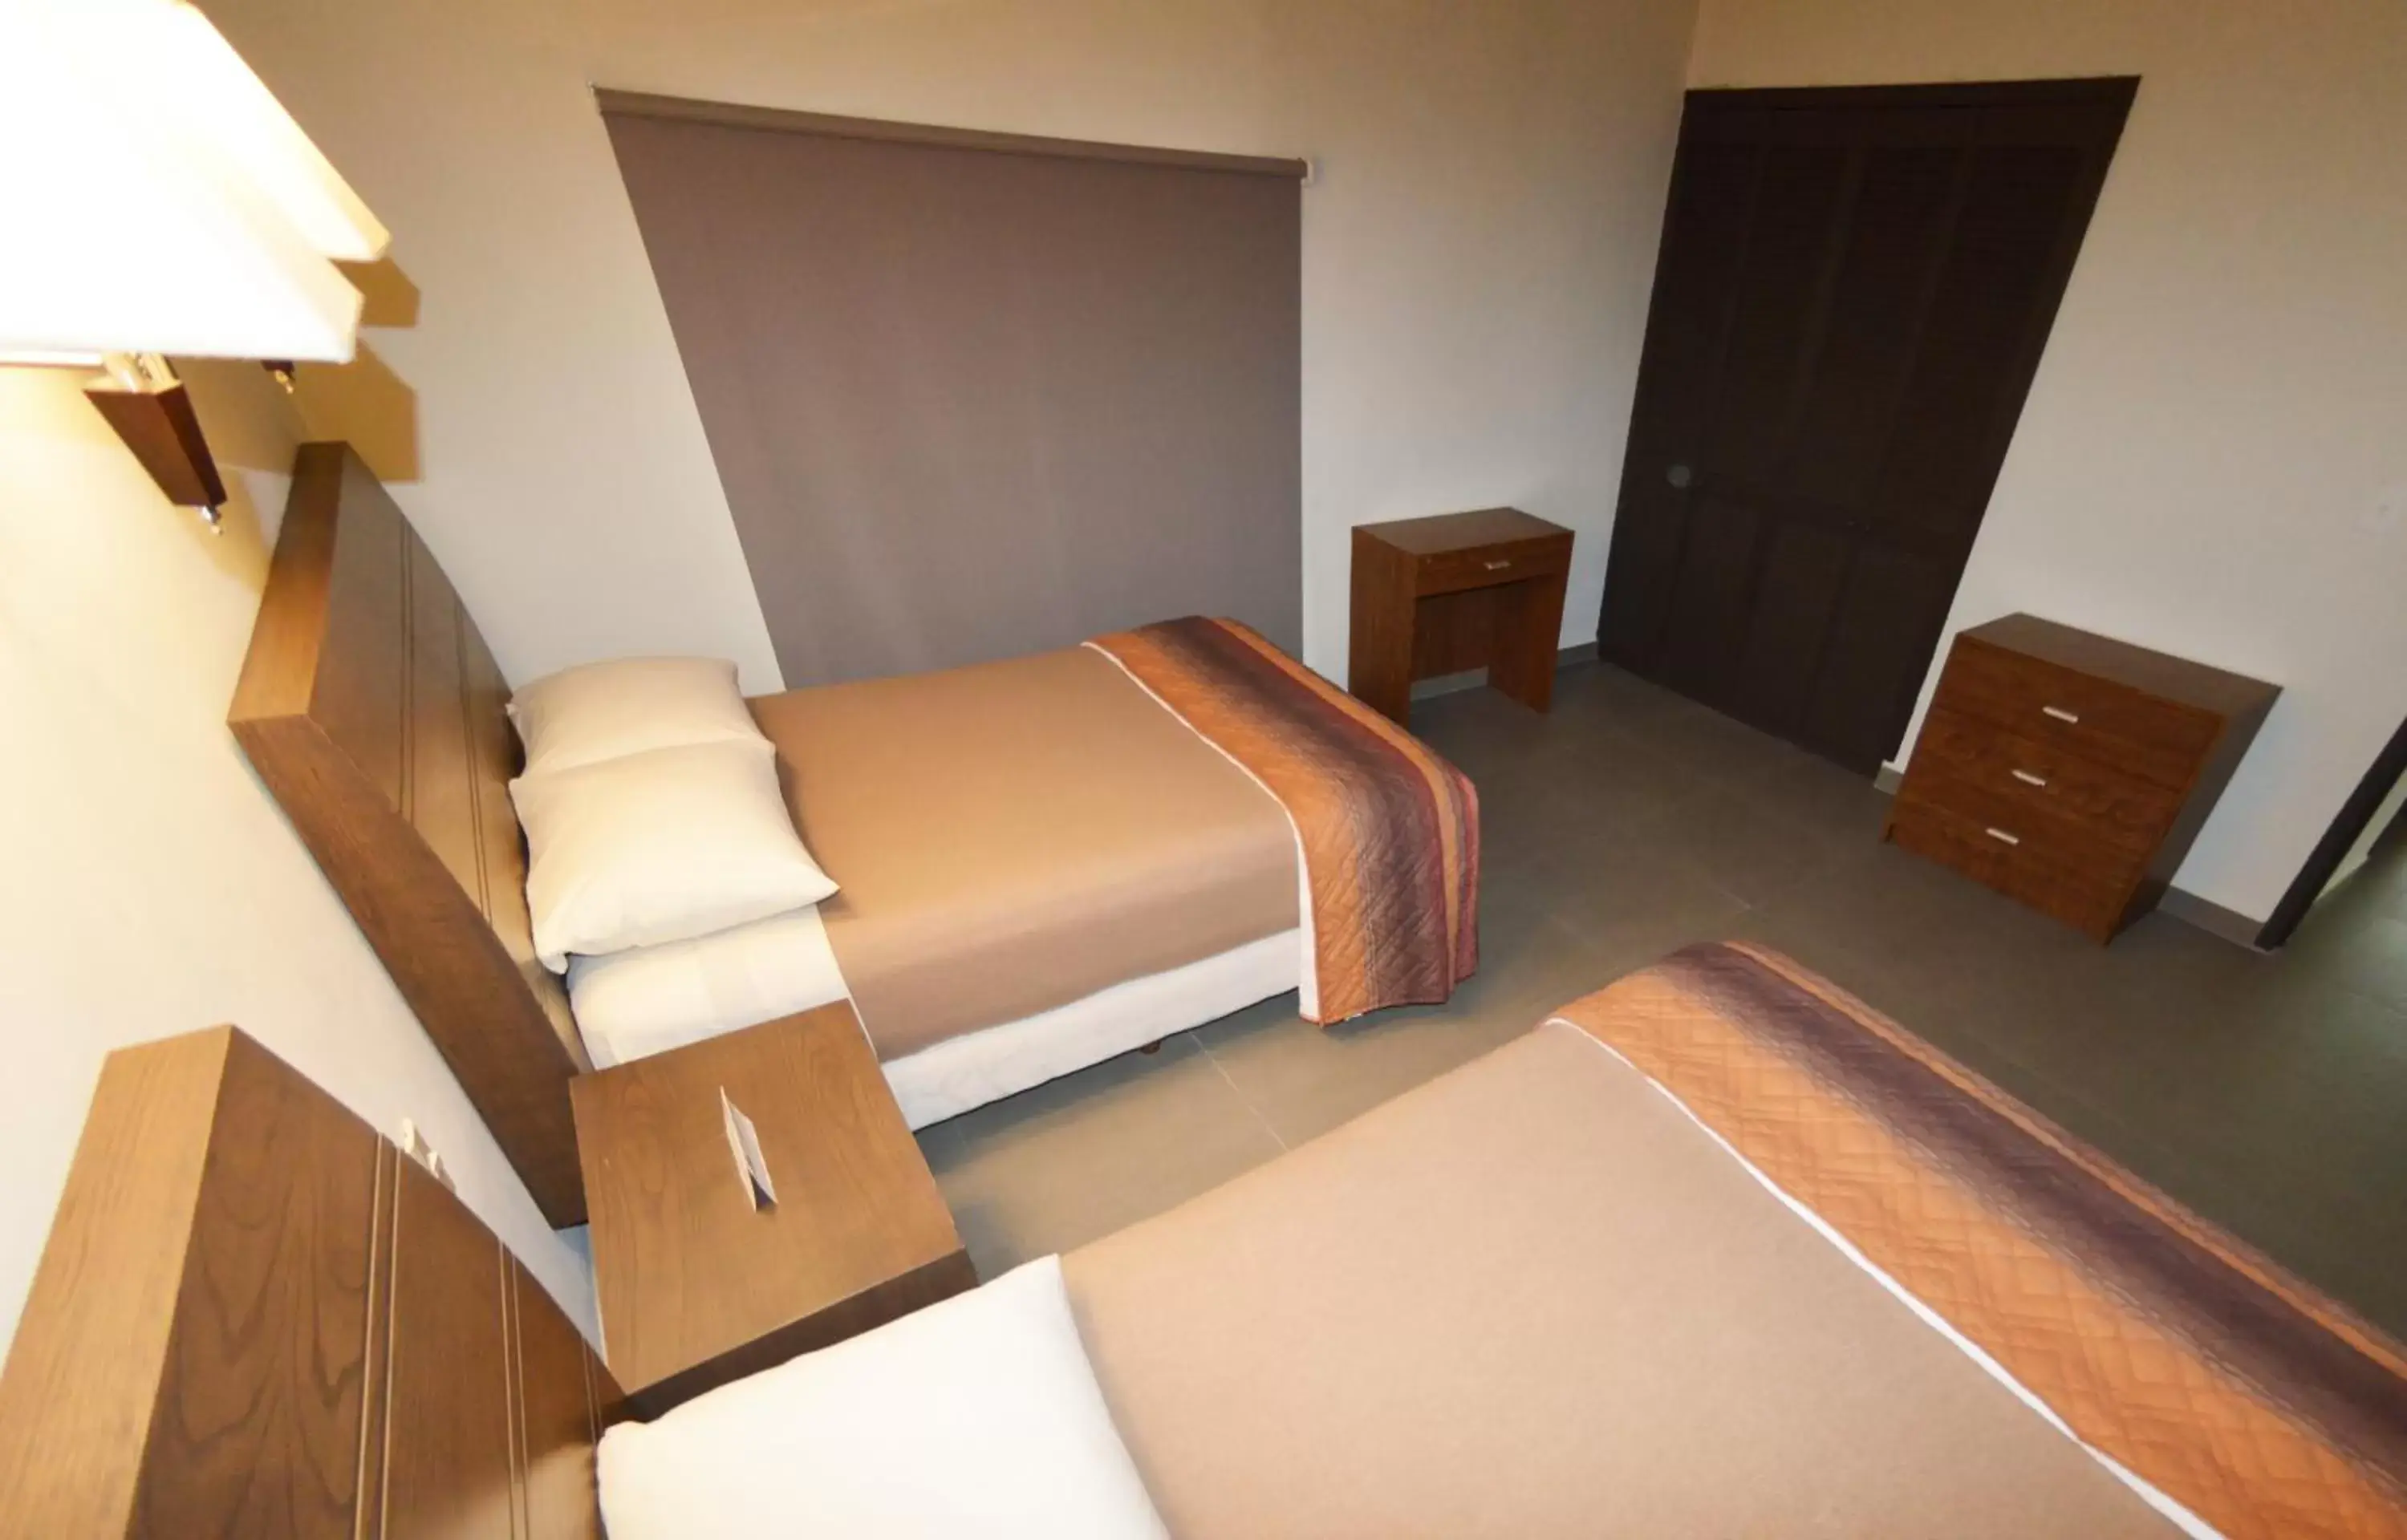 Bedroom, Room Photo in Sina Suites